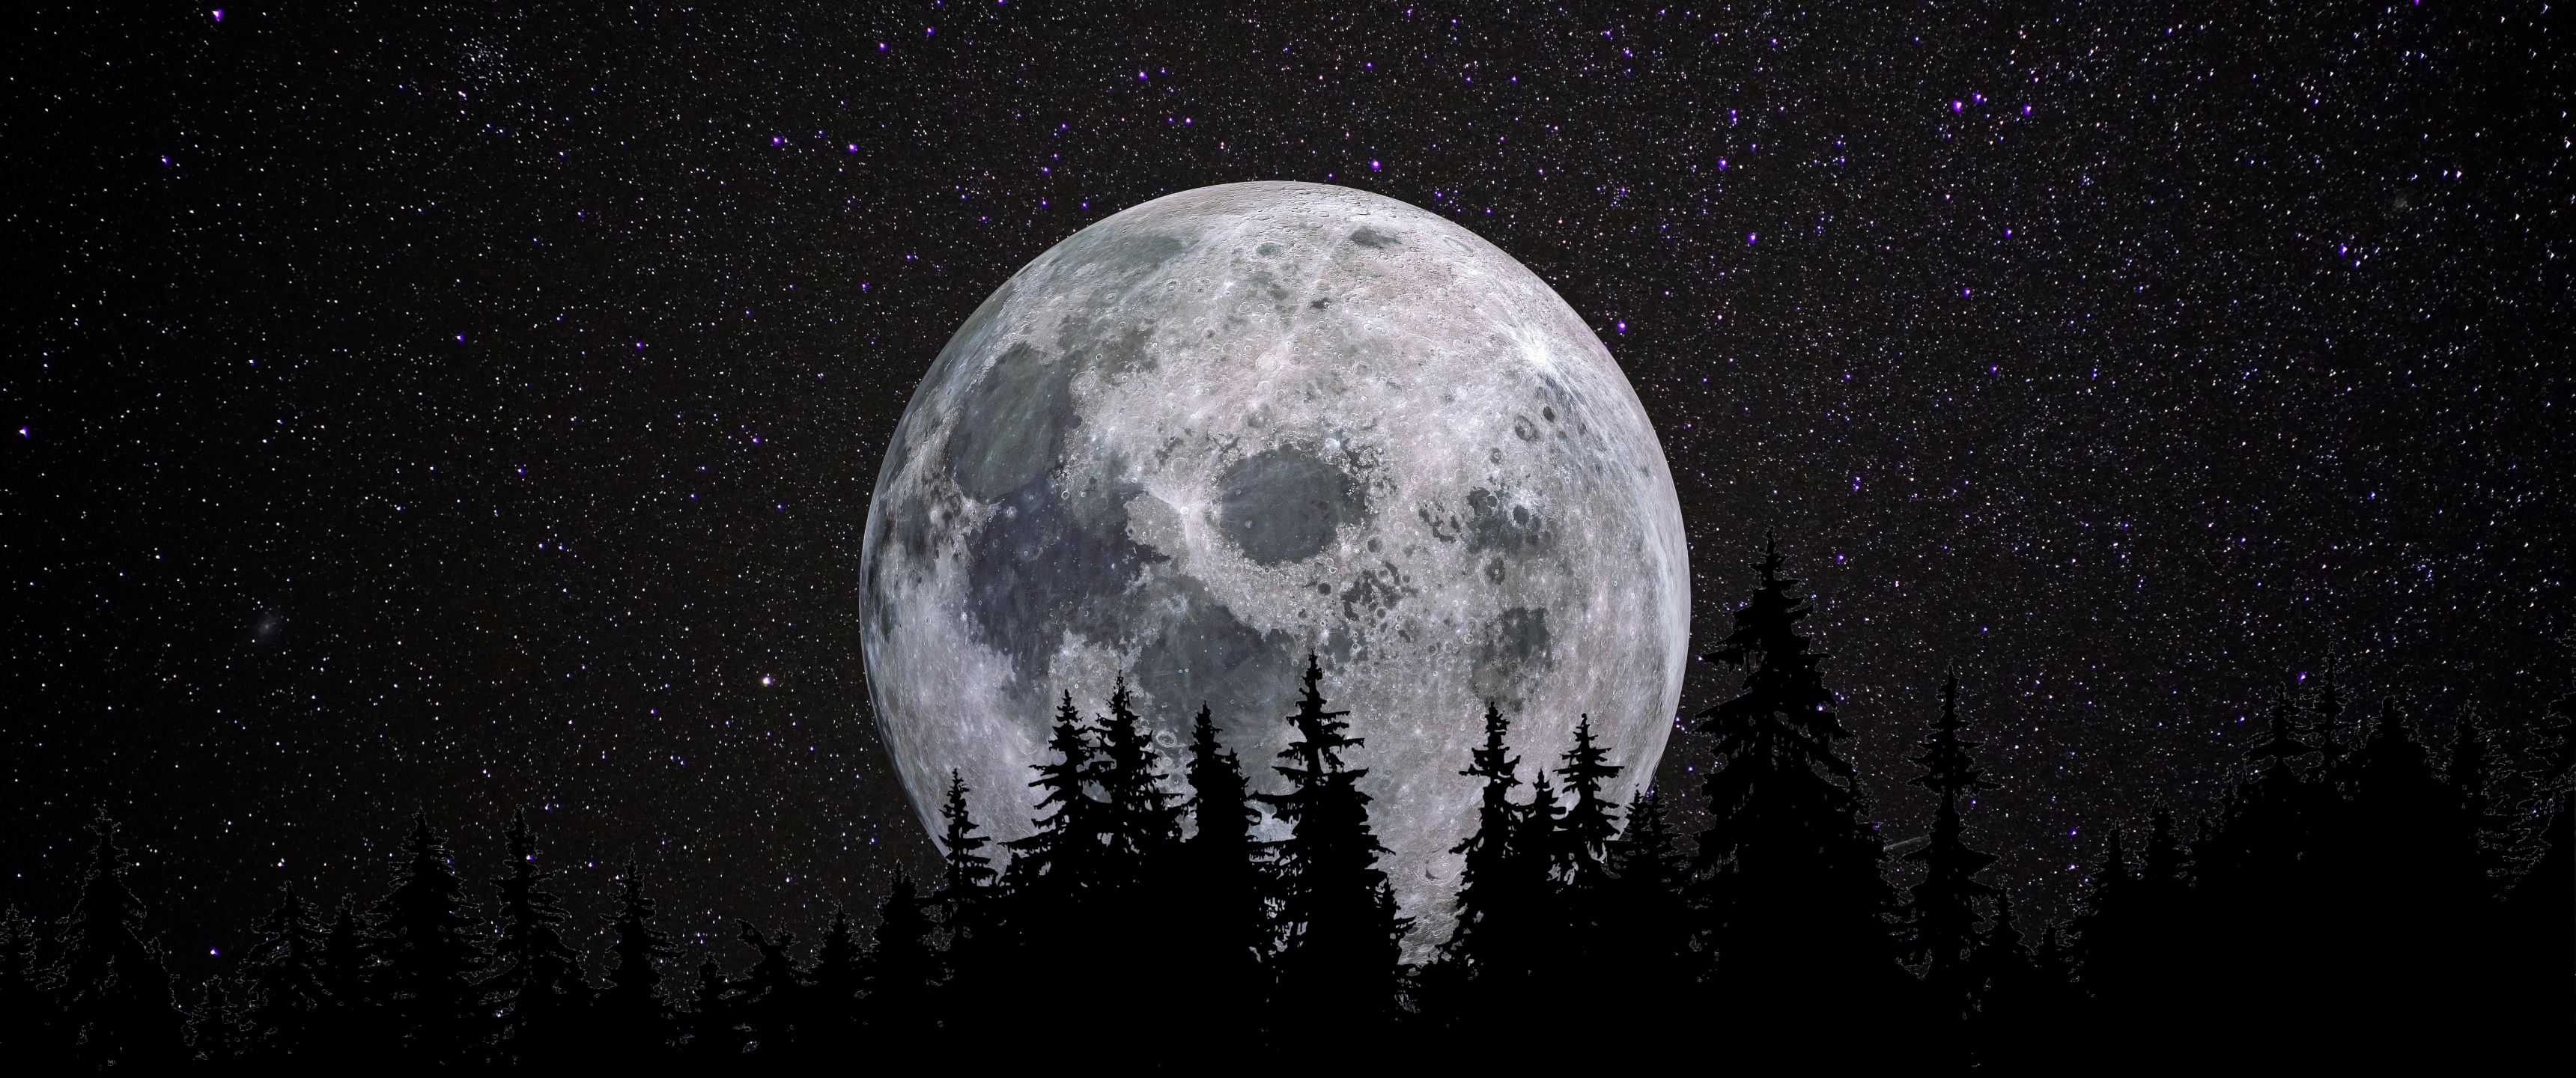 Full Moon Wallpaper là một bảo vật quý giá đầy tuyệt đẹp, với bầu trăng tròn trịa lung linh và bầu không khí chớm đông lạnh lẽo. Khám phá ngay bức ảnh này để tận hưởng sự trầm lắng và lãng mạn của mùa đông.